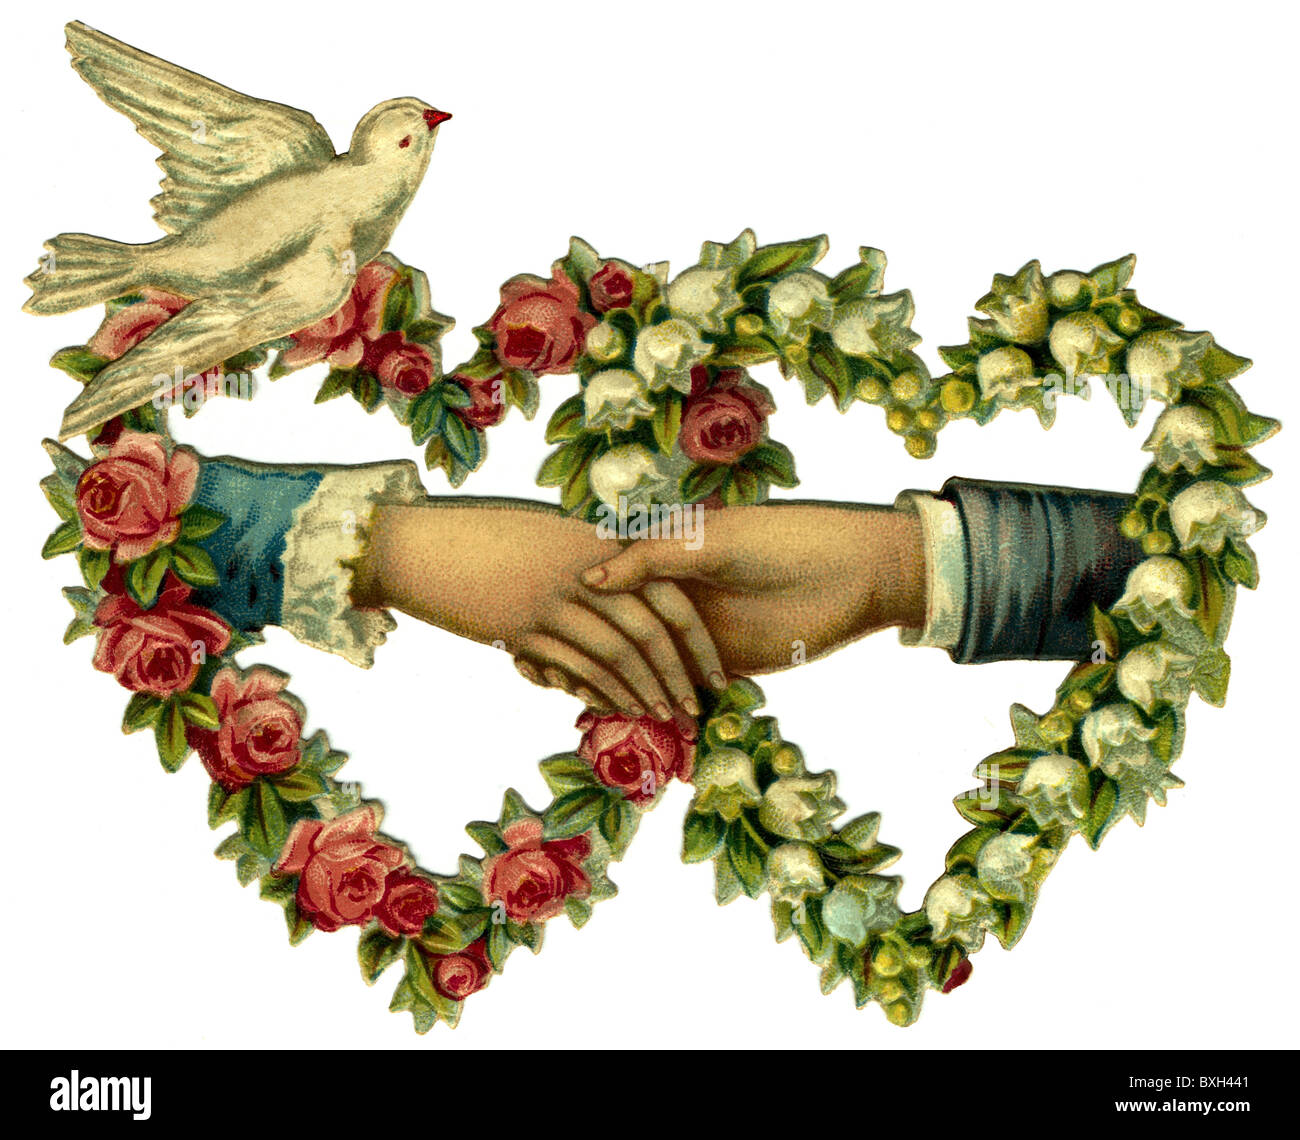 Symbole / emblème / icône, fidélité, colombe blanche avec deux coeurs, carte postale, lithographie, Allemagne, vers 1912, droits additionnels-Clearences-non disponible Banque D'Images